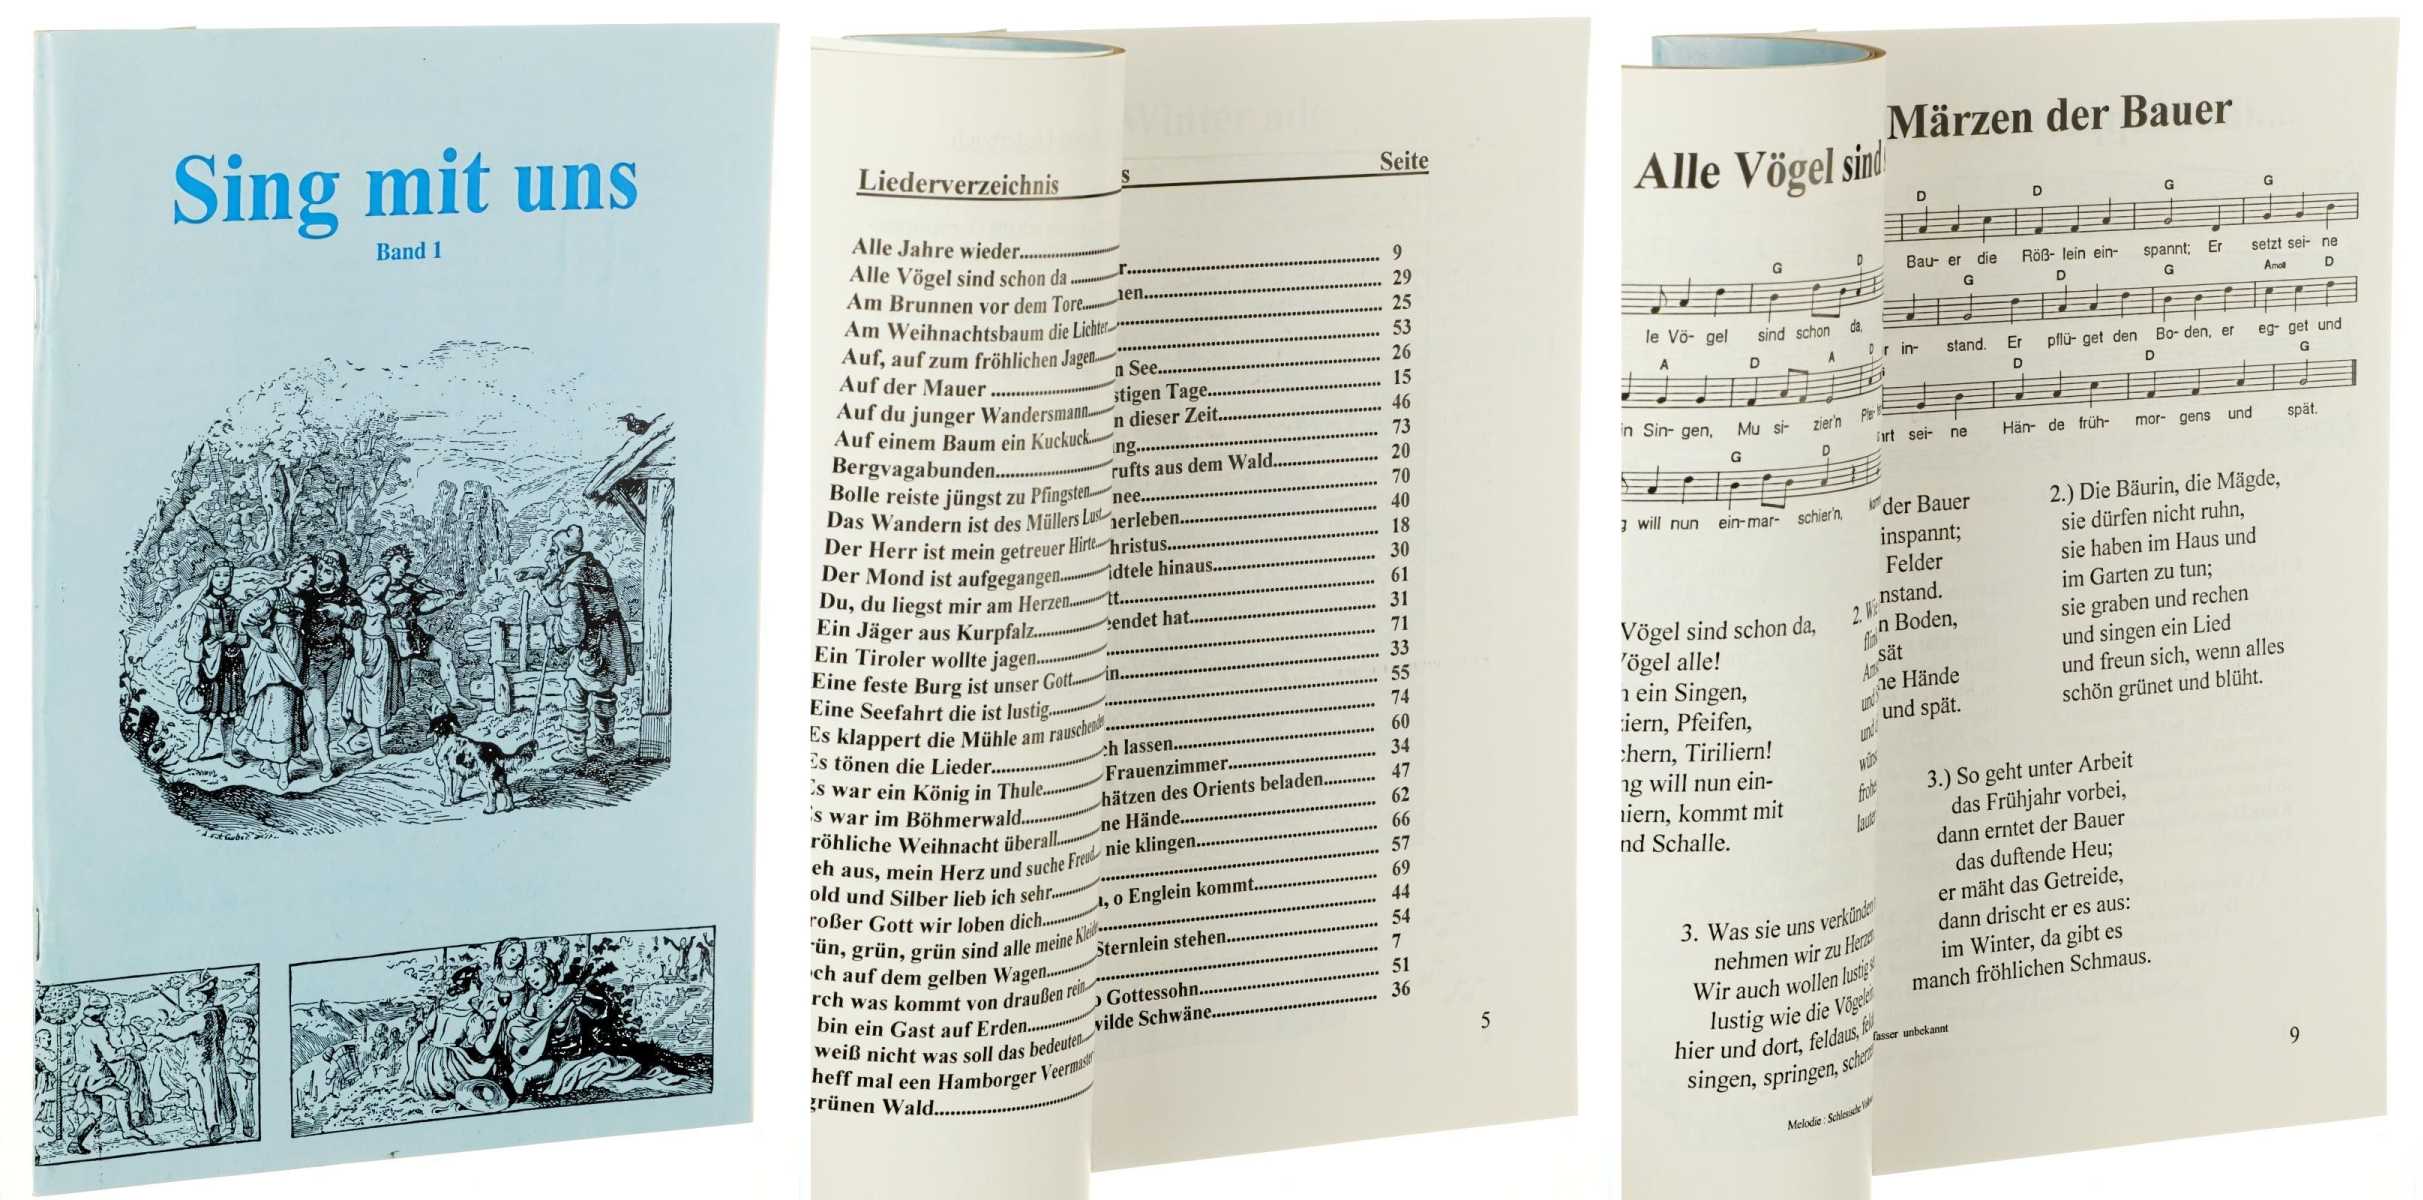   Sing mit uns. Band 1. Hrsg. von Alois Humel. 